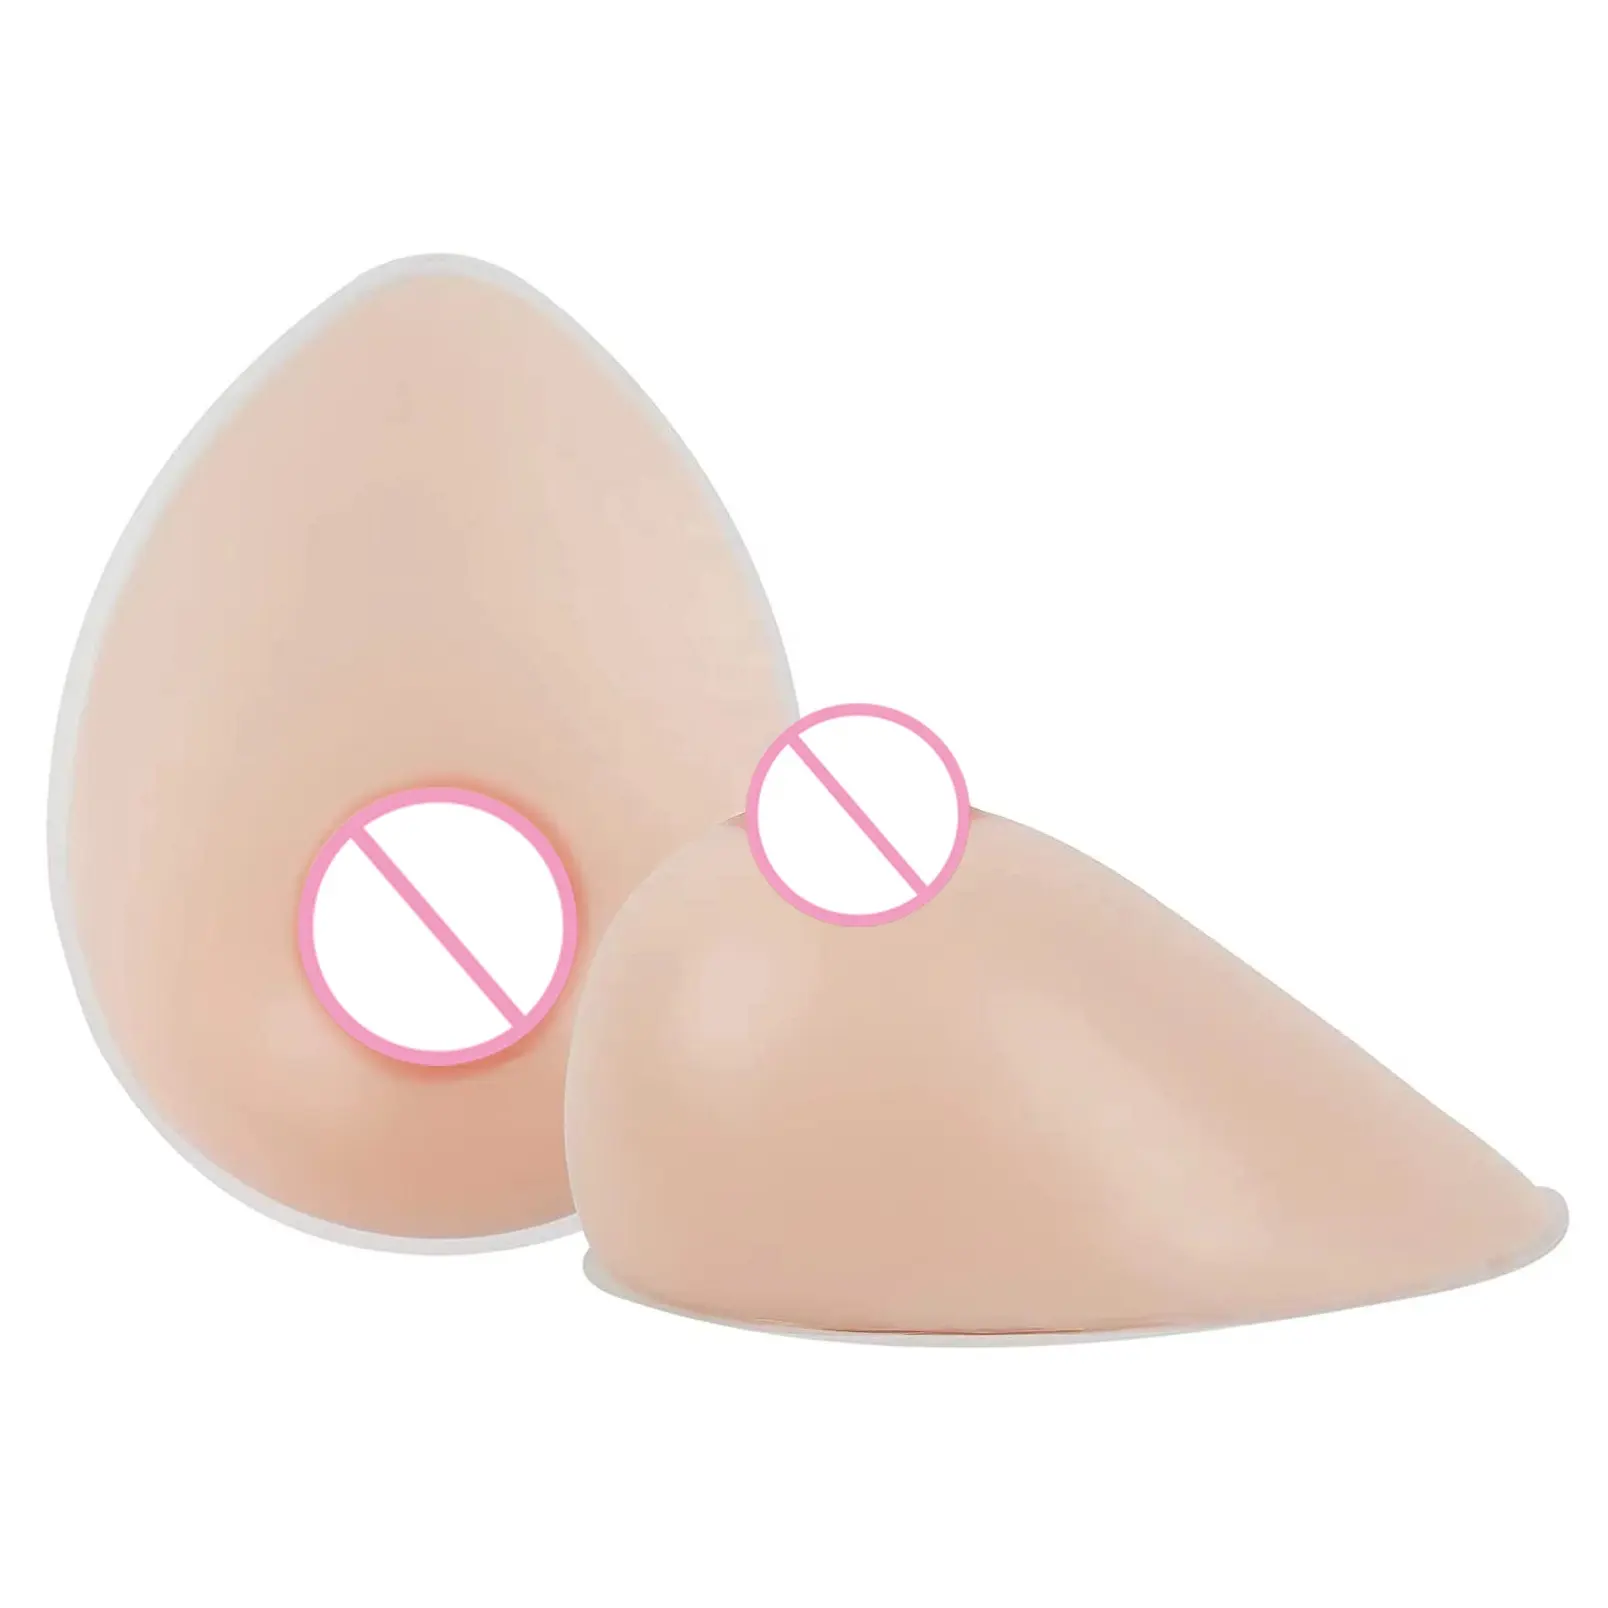 Formas de pecho de silicona para travestis, mastección, senos falsos, prótesis